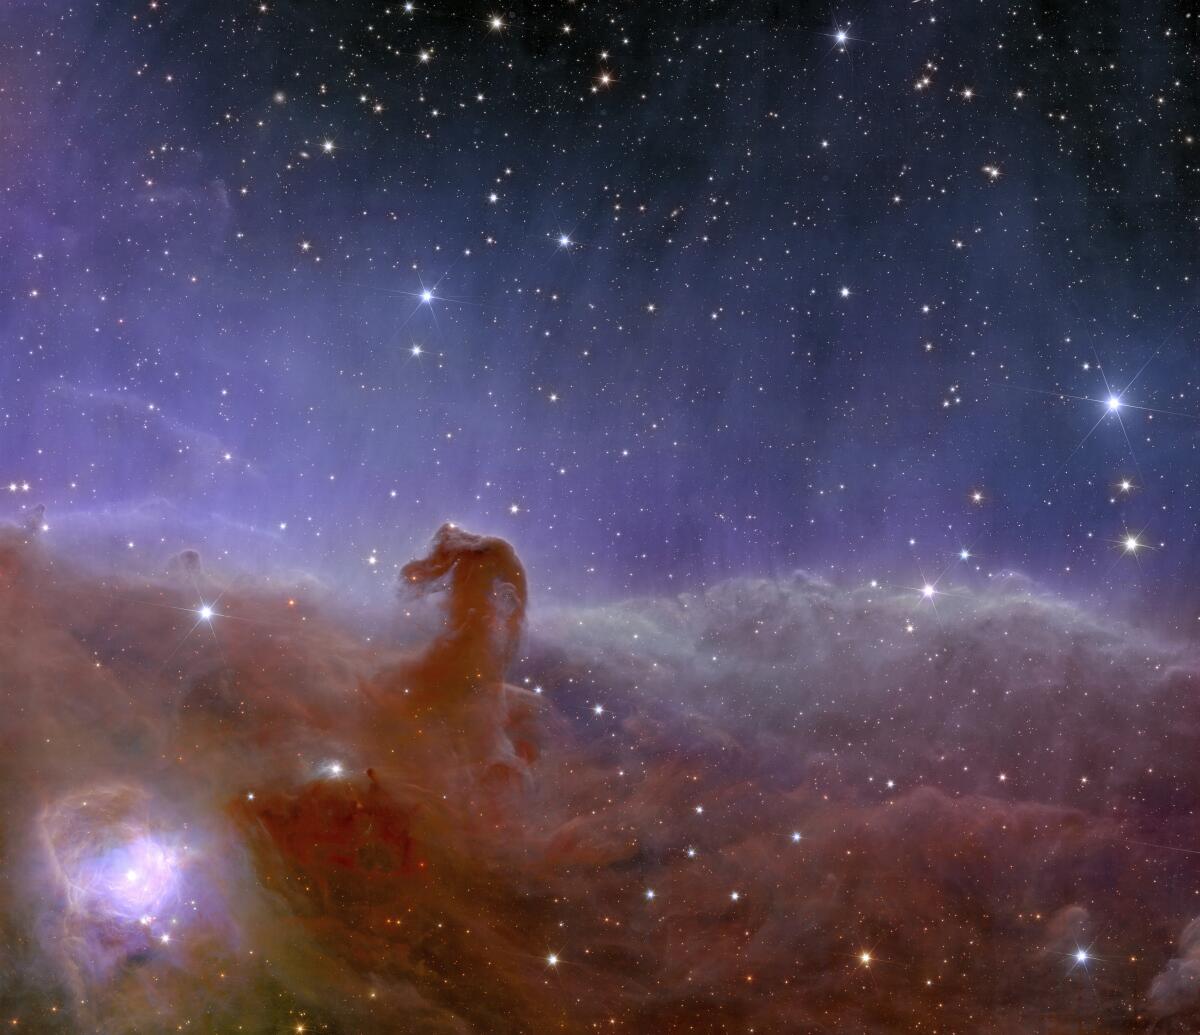 Imagen de la Nebulosa “Horsehead” tomada por el telescopio espacial Euclid de la Agencia Espacial Europea